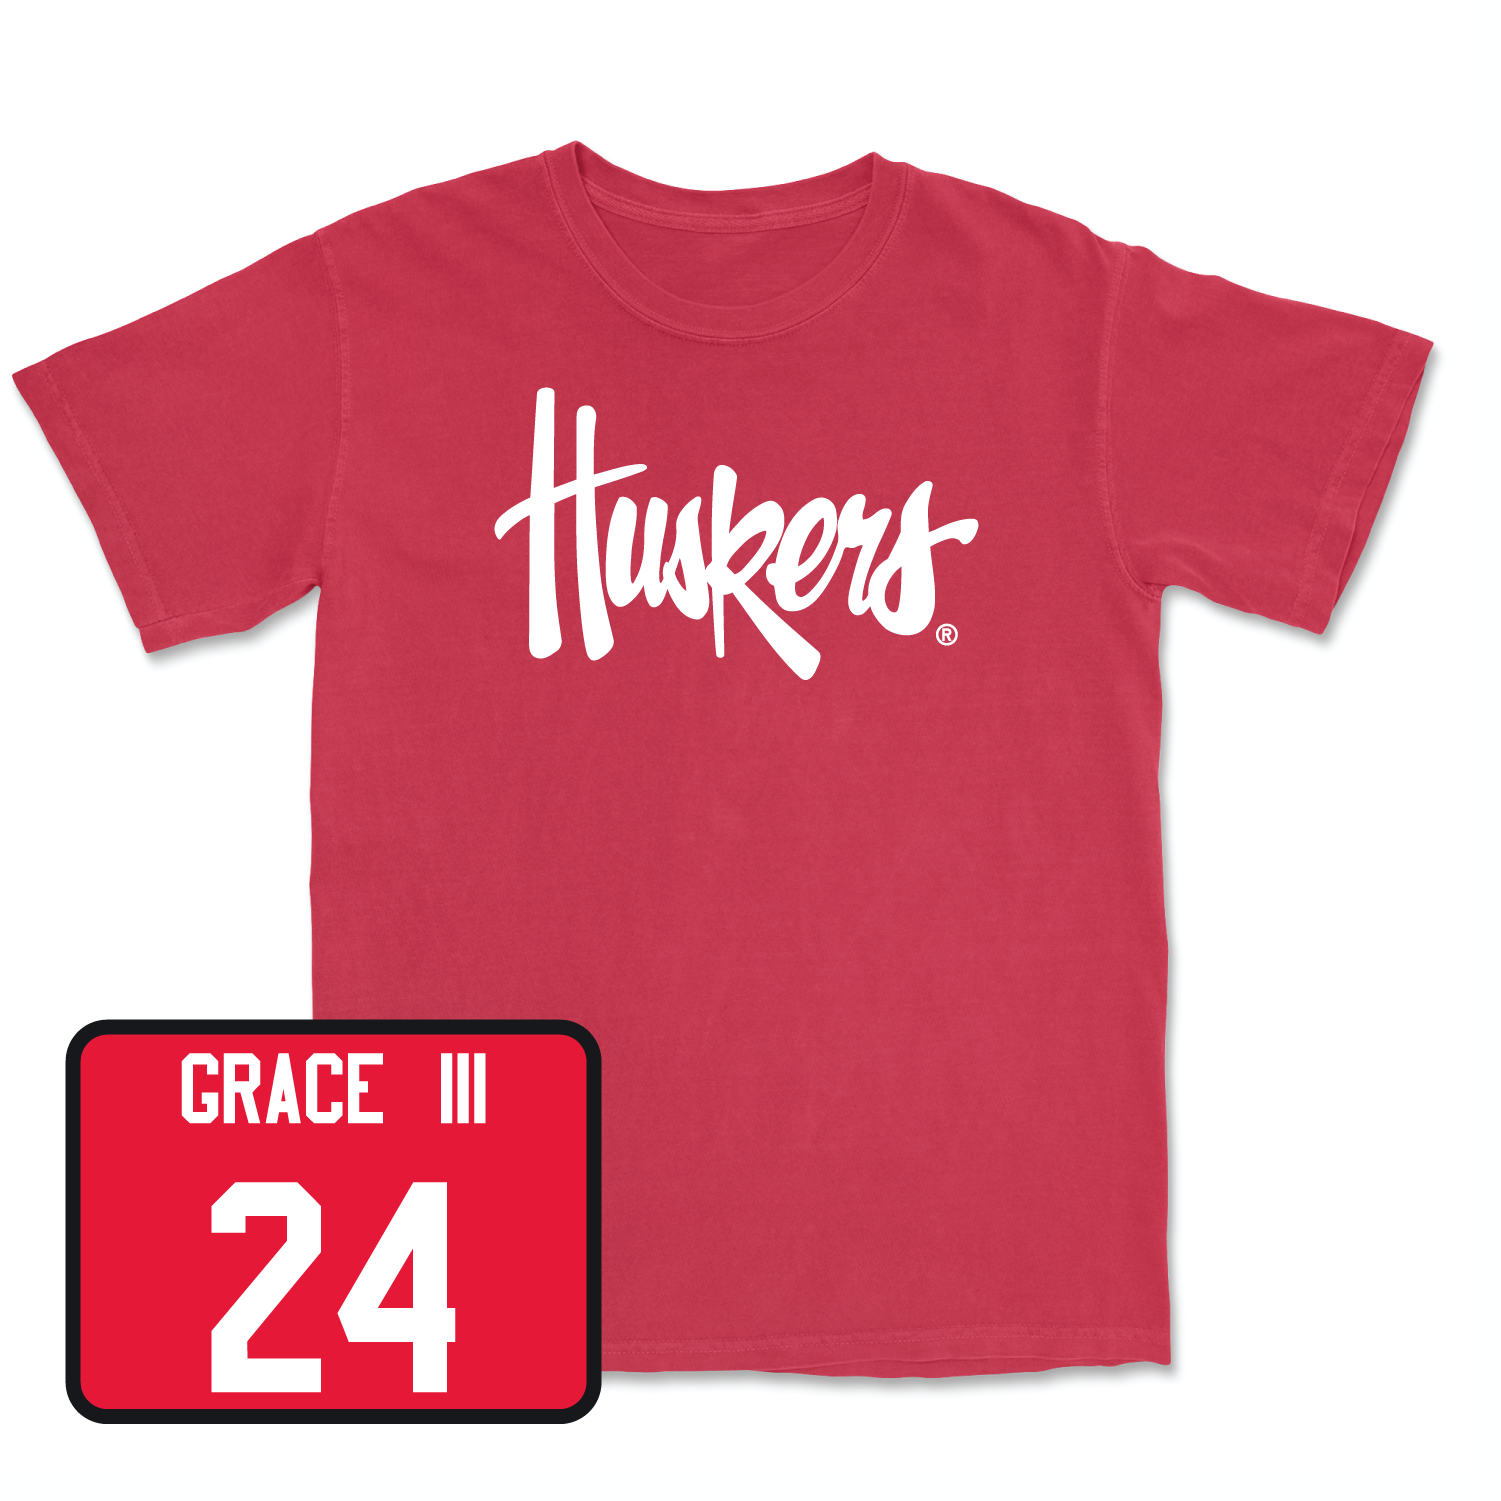 Red Men's Basketball Huskers Tee Medium / Jeffrey Grace III | #24